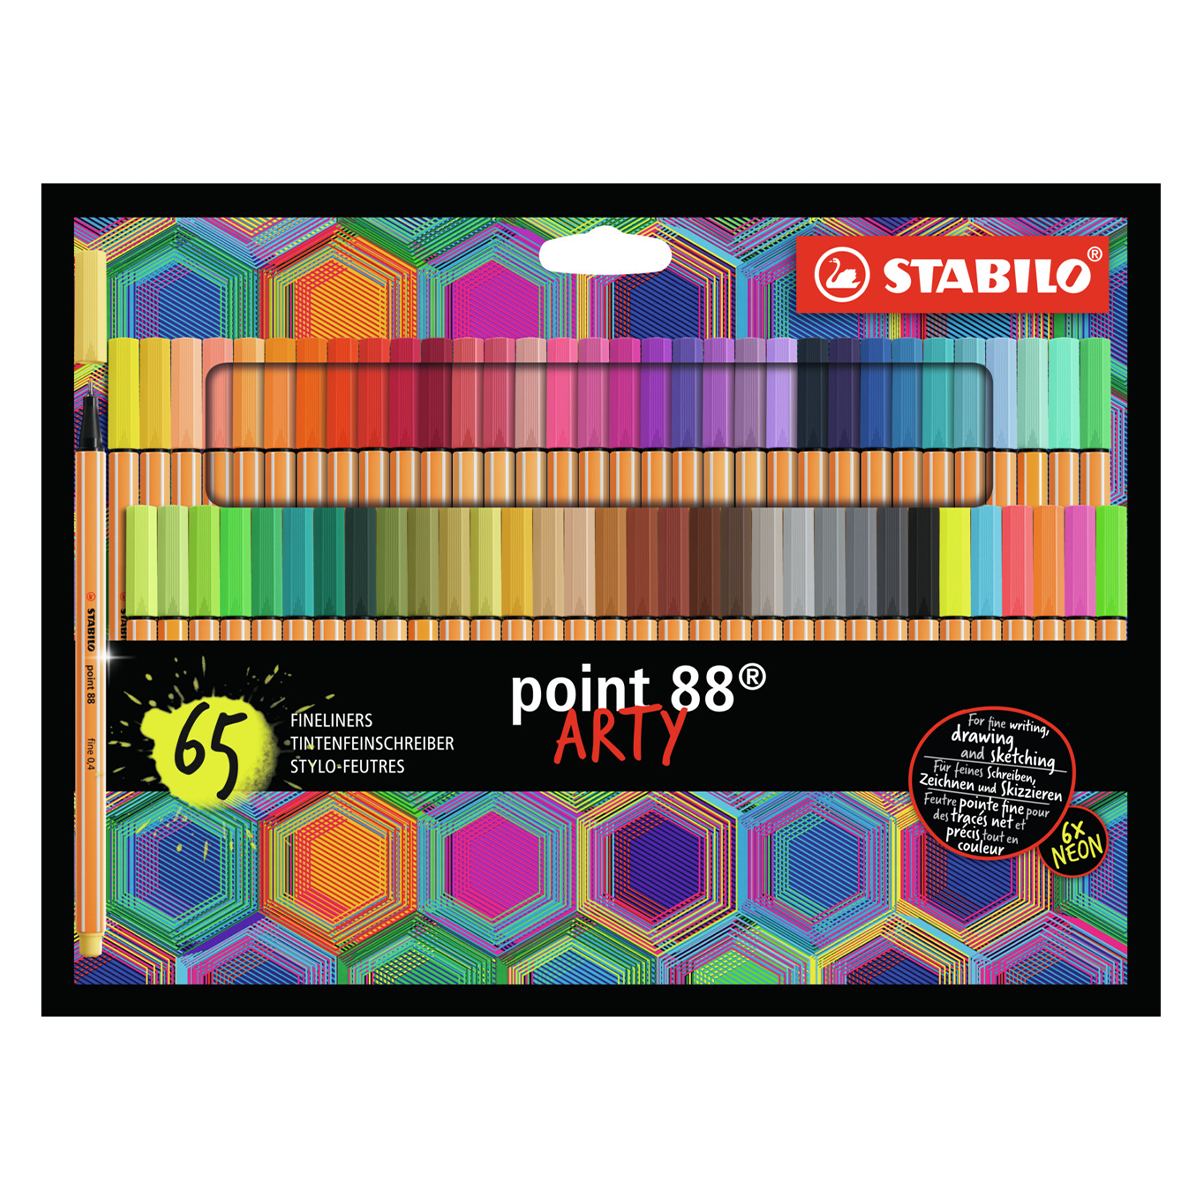 Stylos marqueurs multicolores à 2 lignes, 6 pièces, Fineliner de